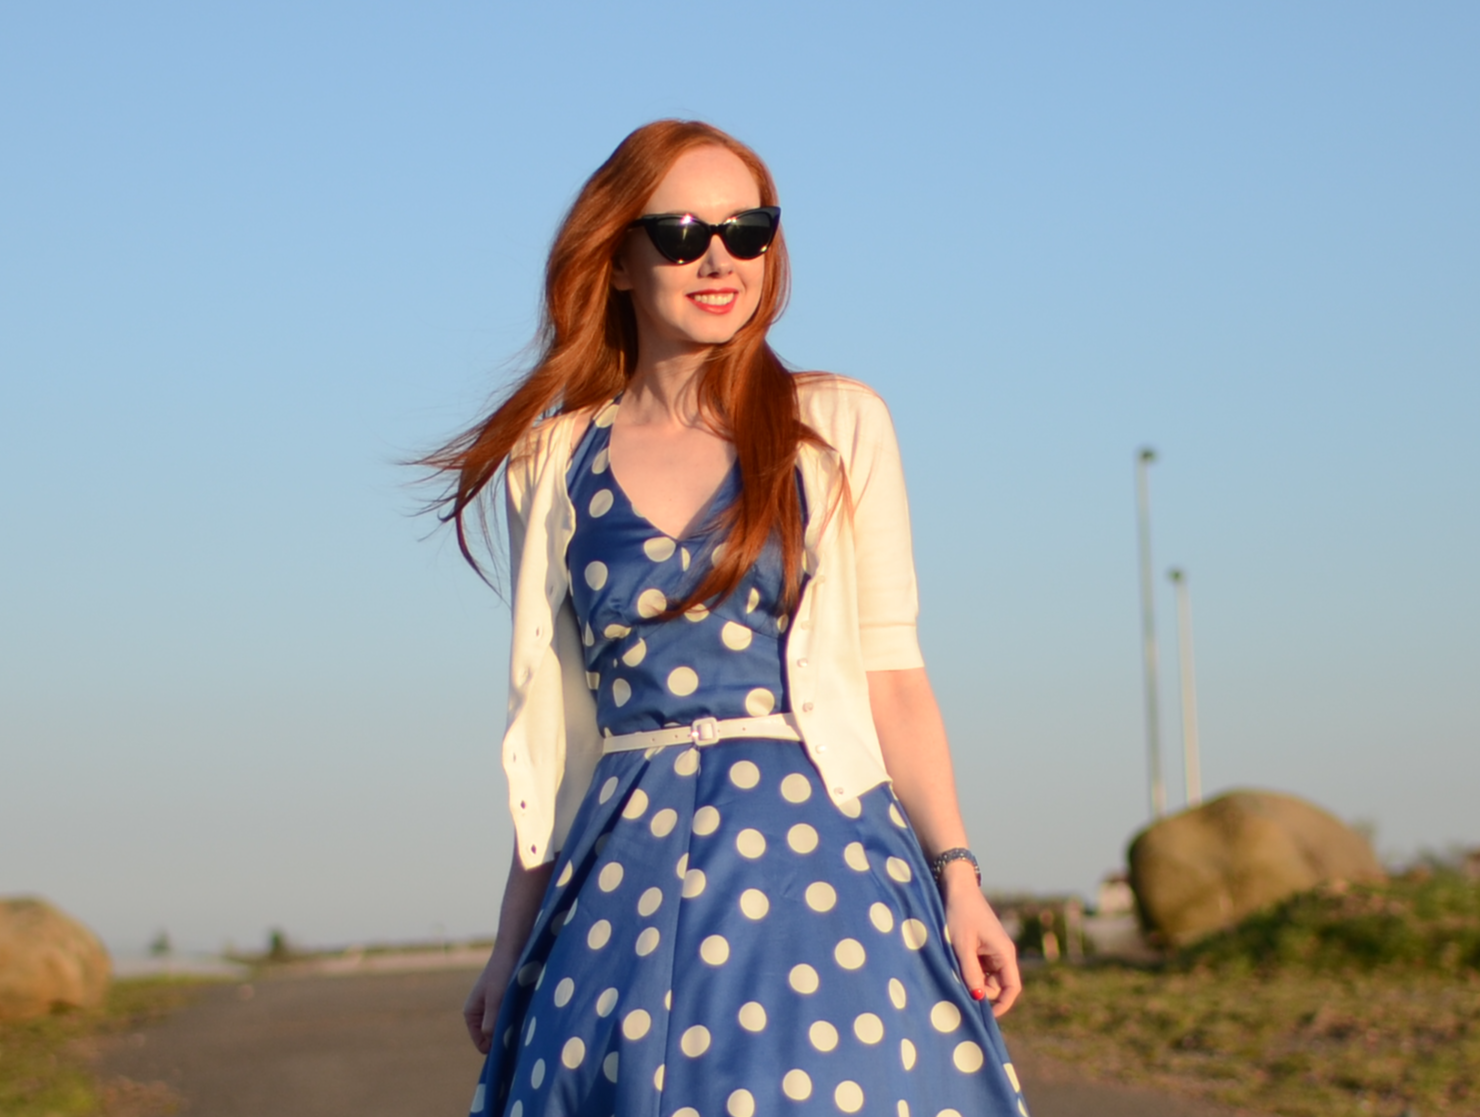 Boden Vintage Halterneck dress in blue polka dot